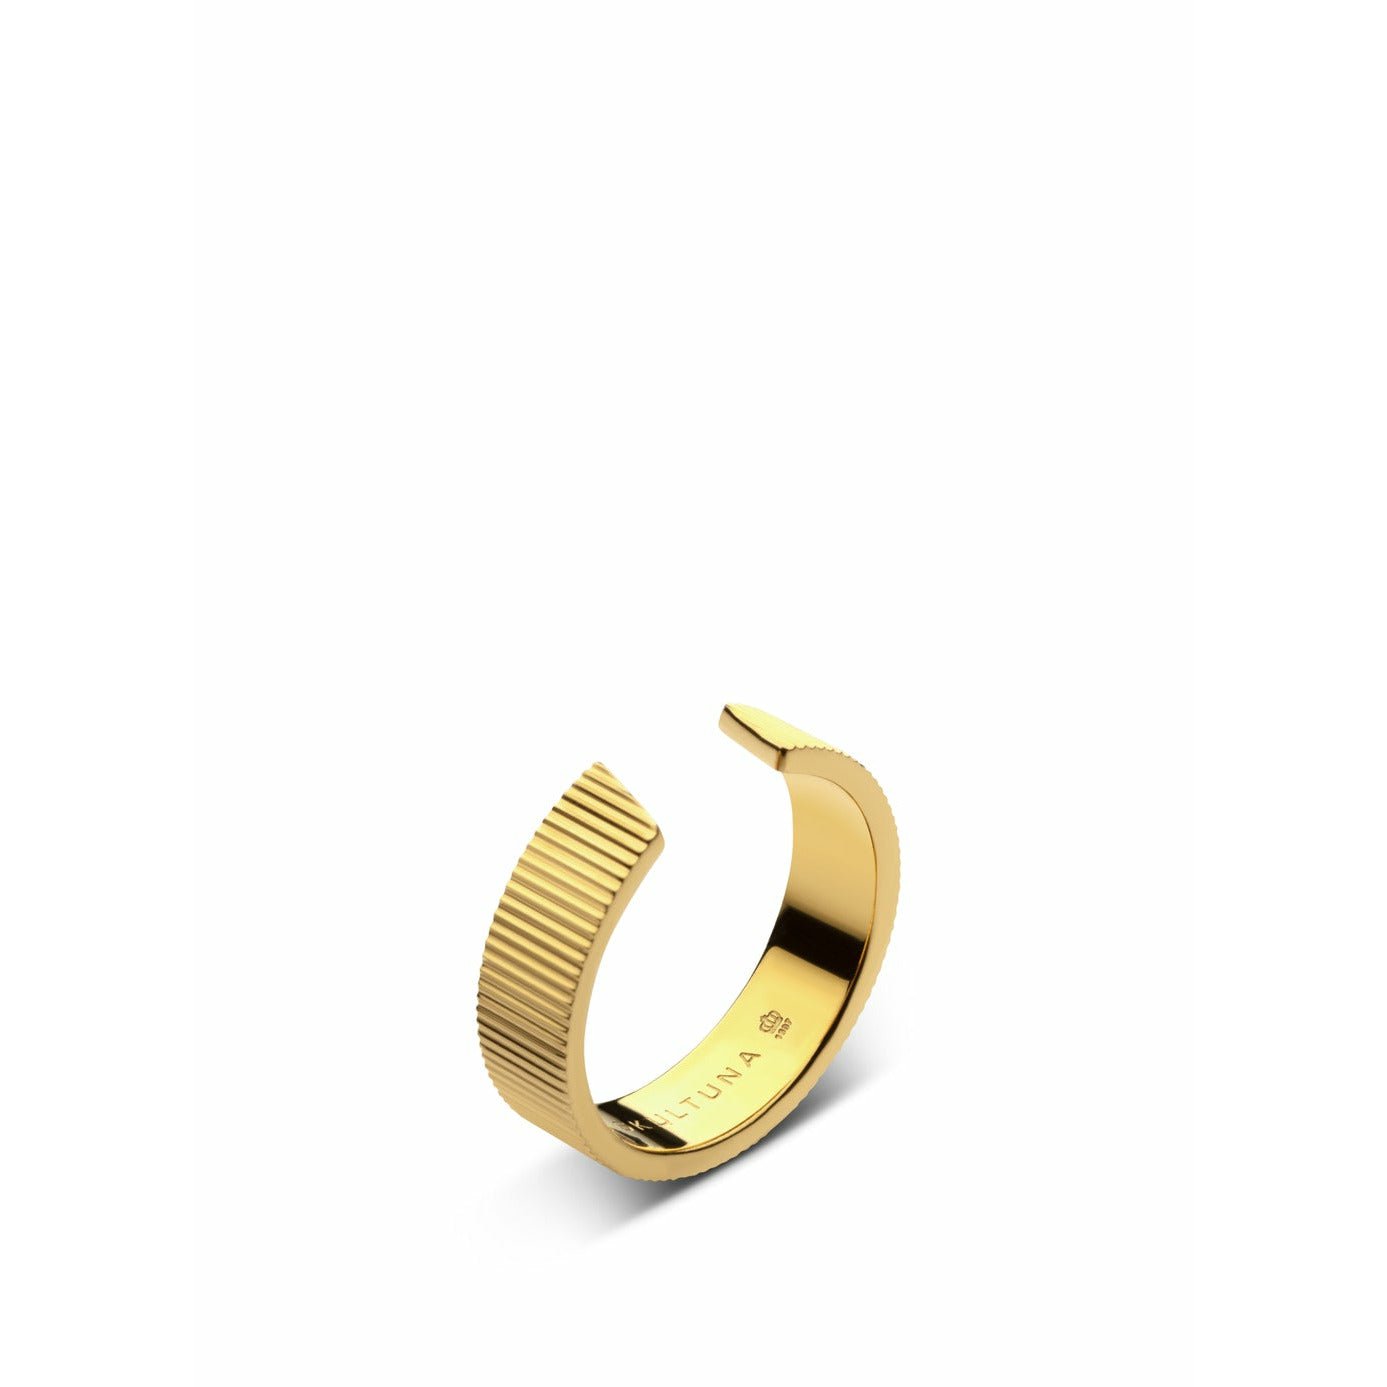 Szultuna pierścień żebrowany szeroki mały 316 l stalowy złoto platowany, Ø1,6 cm